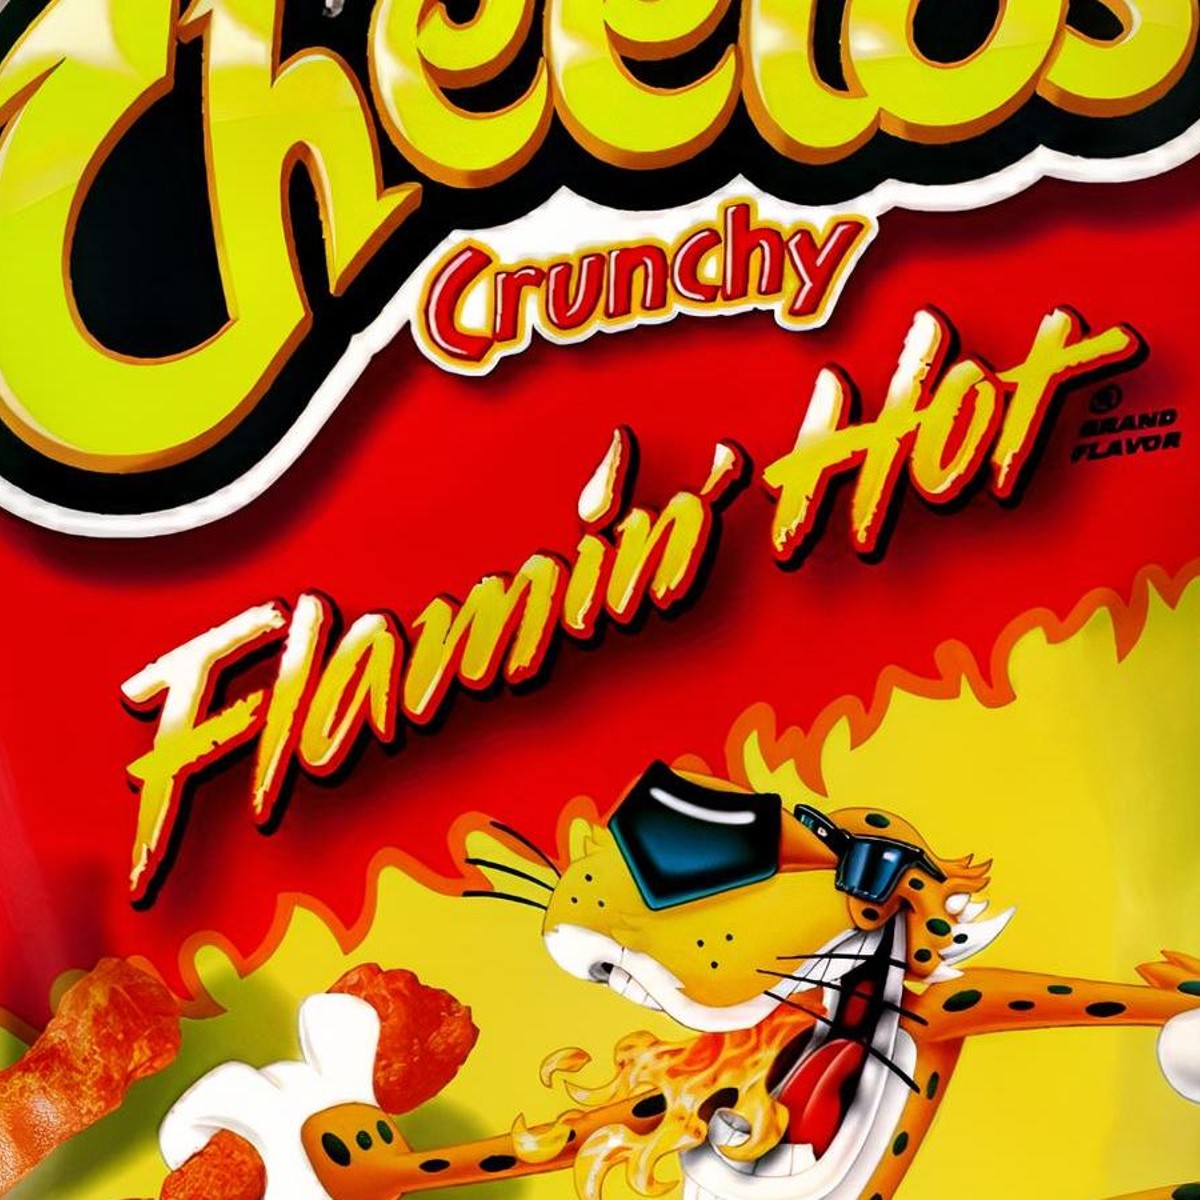 Cheetos Crunchy XXTRA Flamin' HotCheese 240 gramas